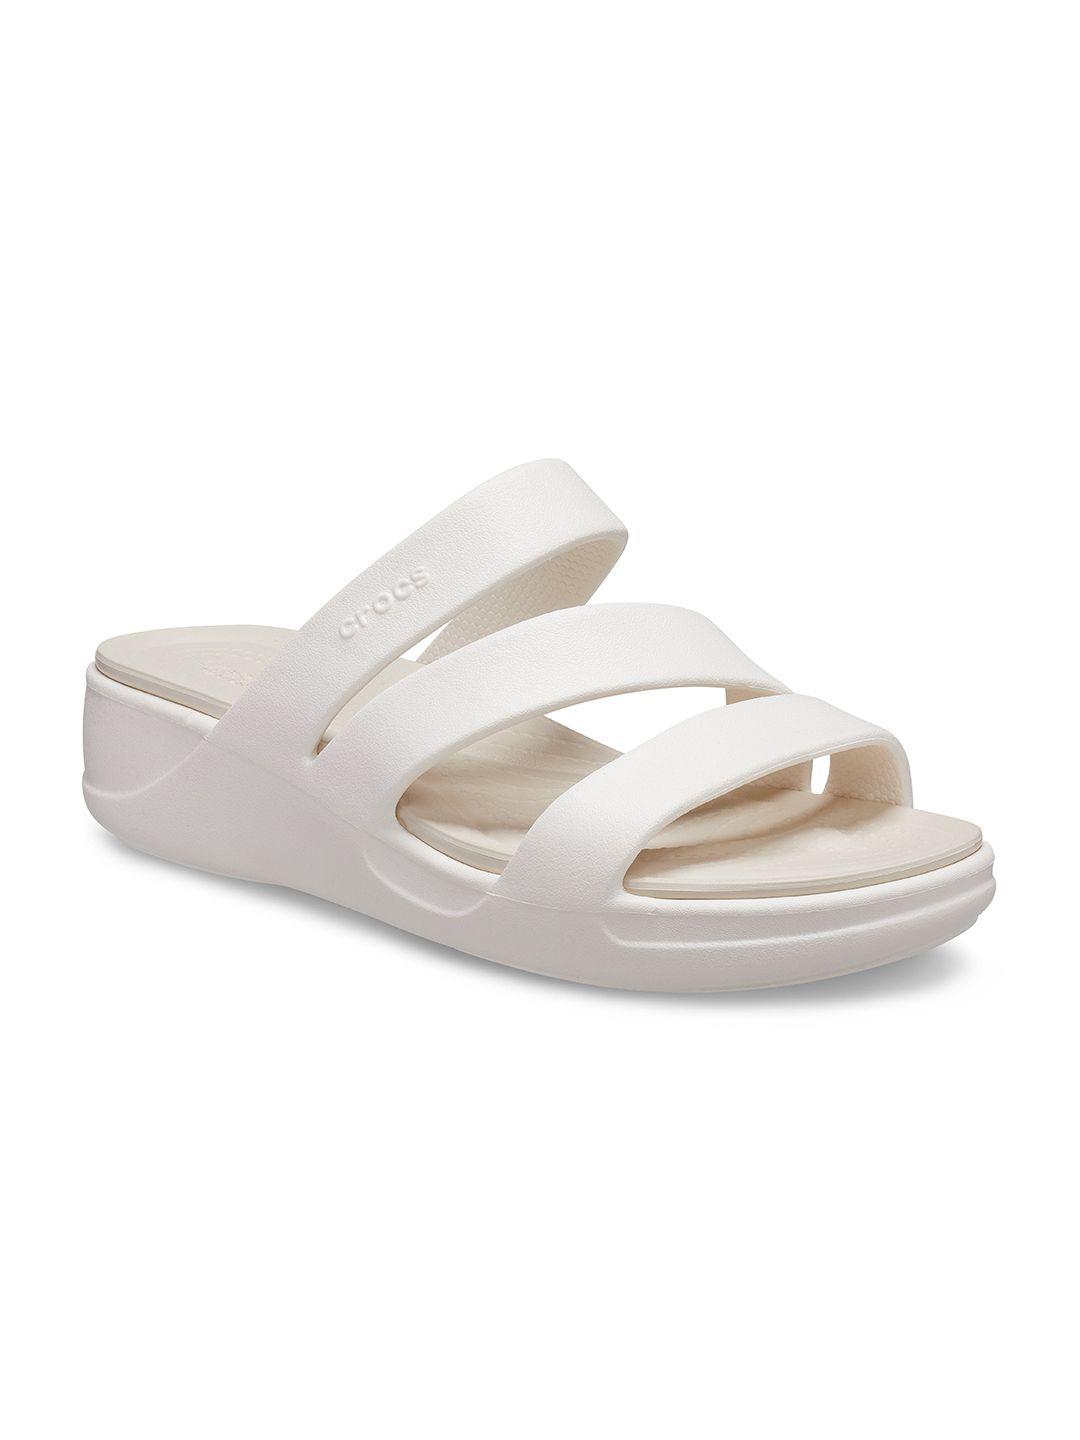 crocs-women-open-toe-croslite-comfort-heels